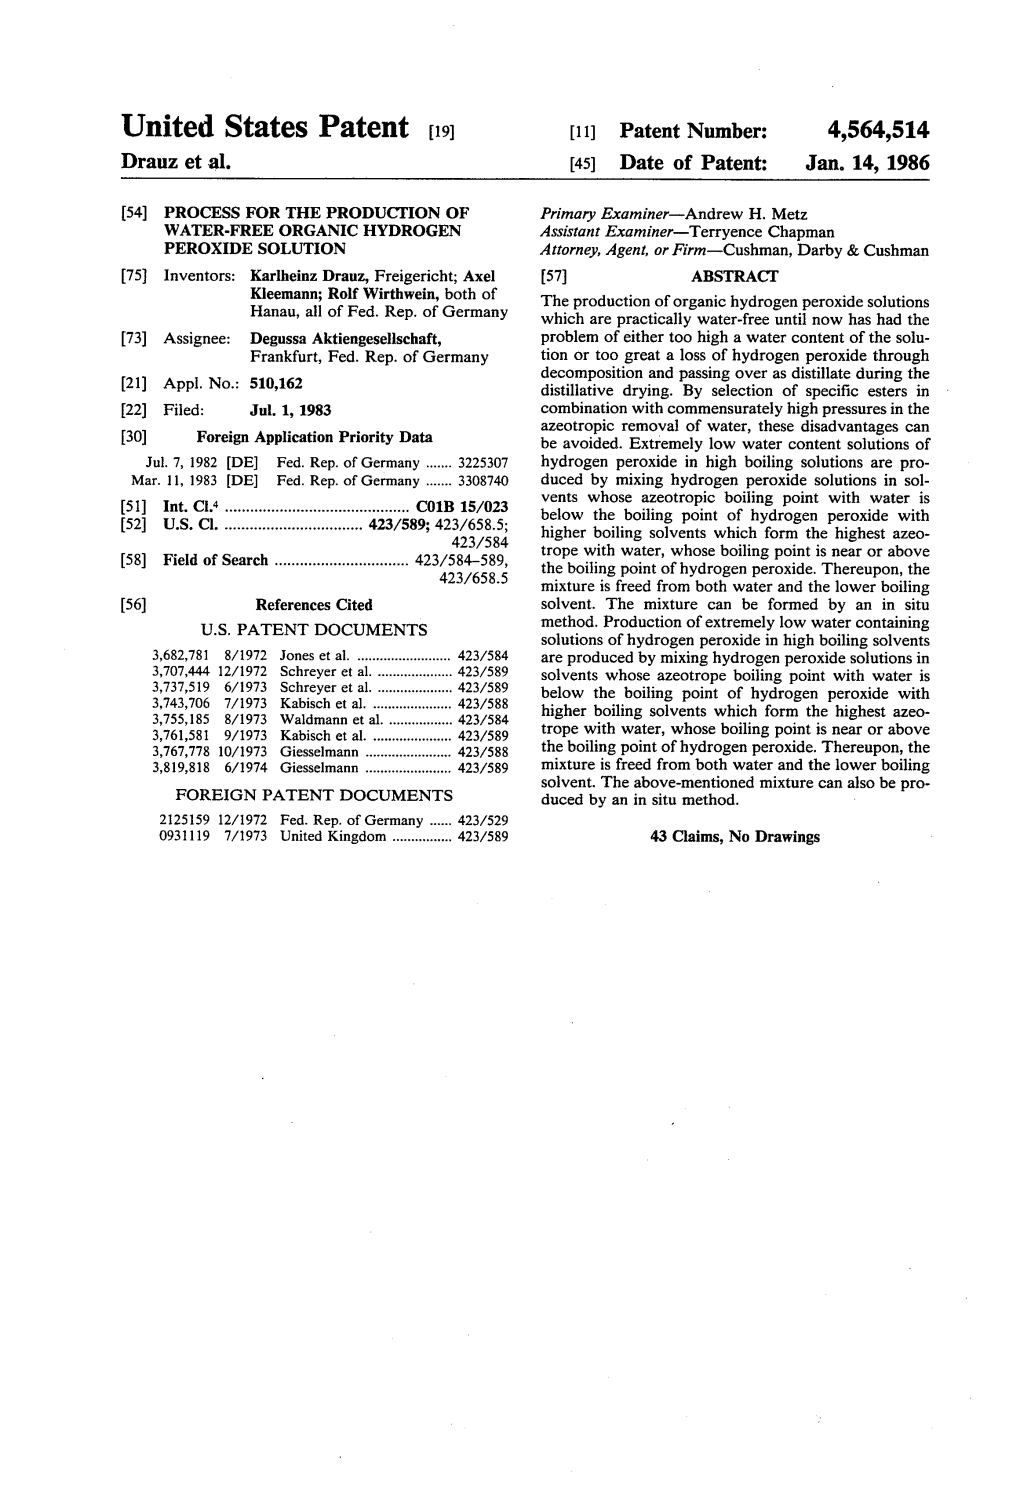 United States Patent (19) 11) Patent Number: 4,564,514 Drauz Et Al